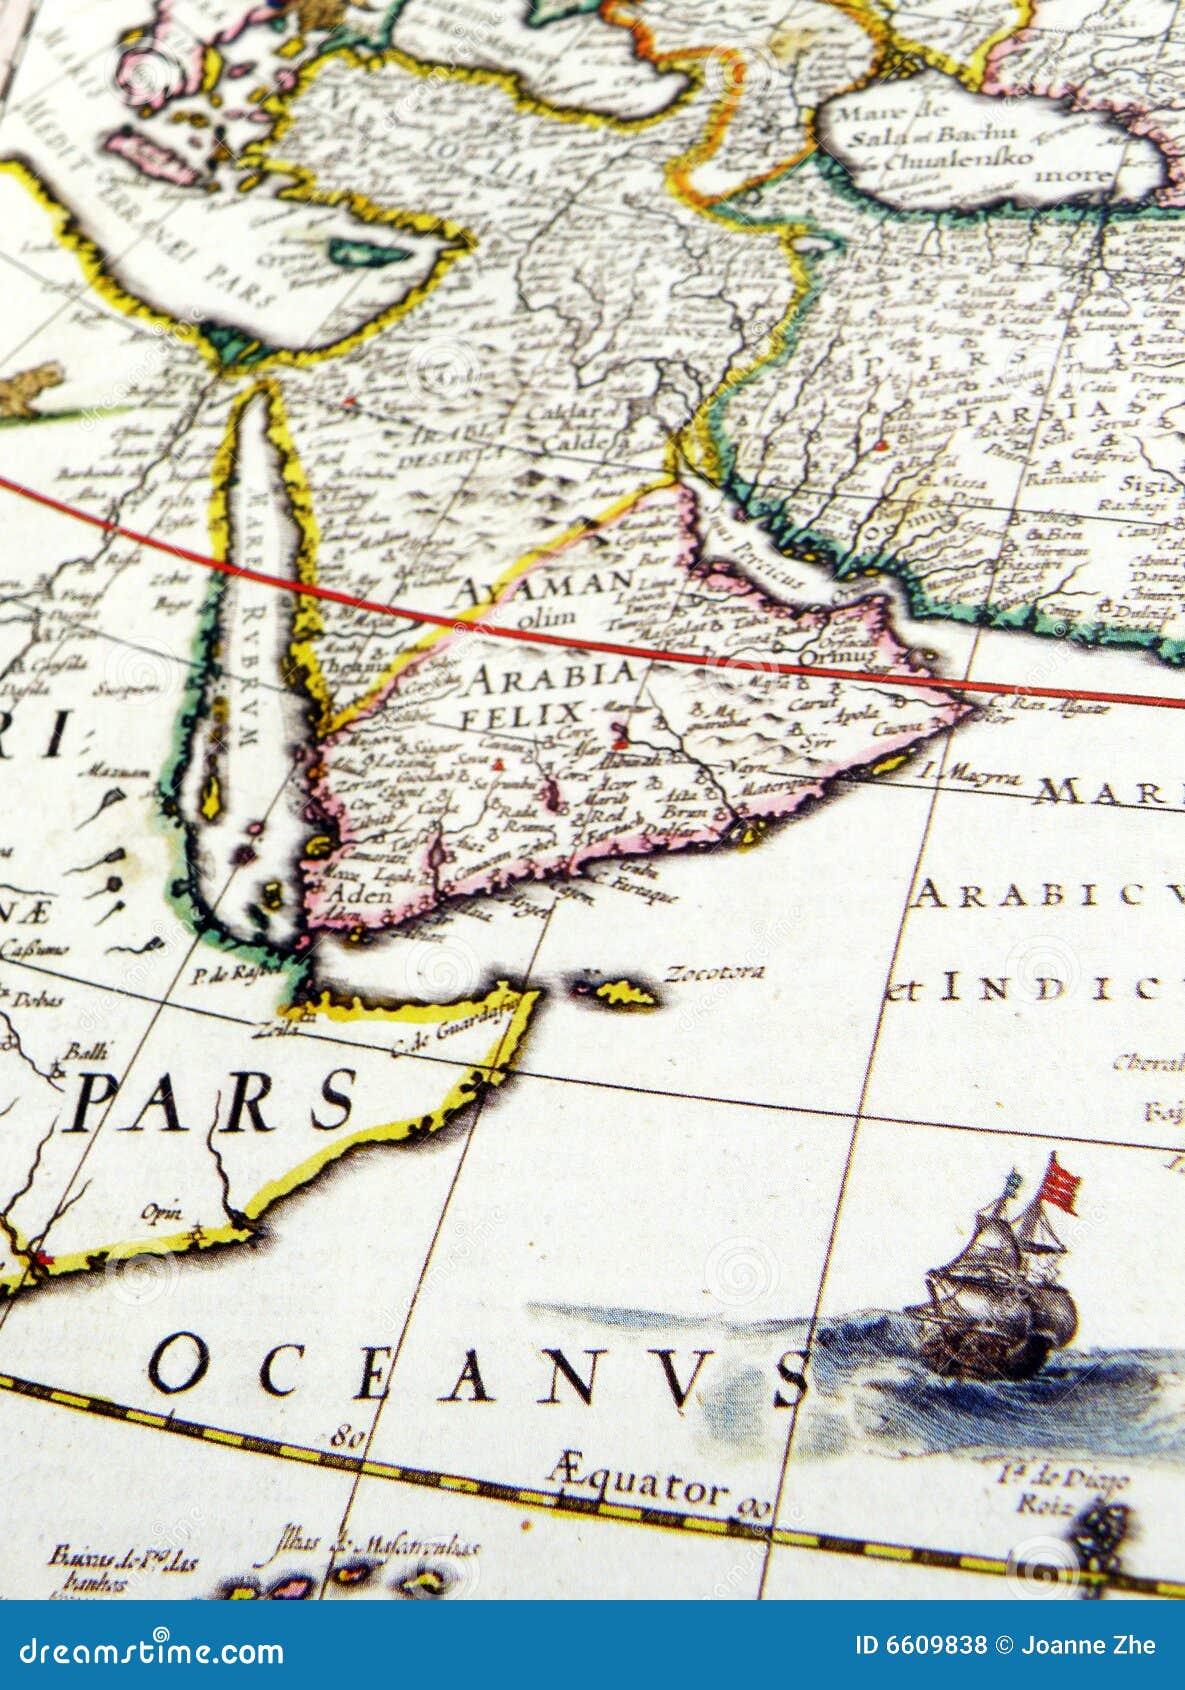 antique map of arabia